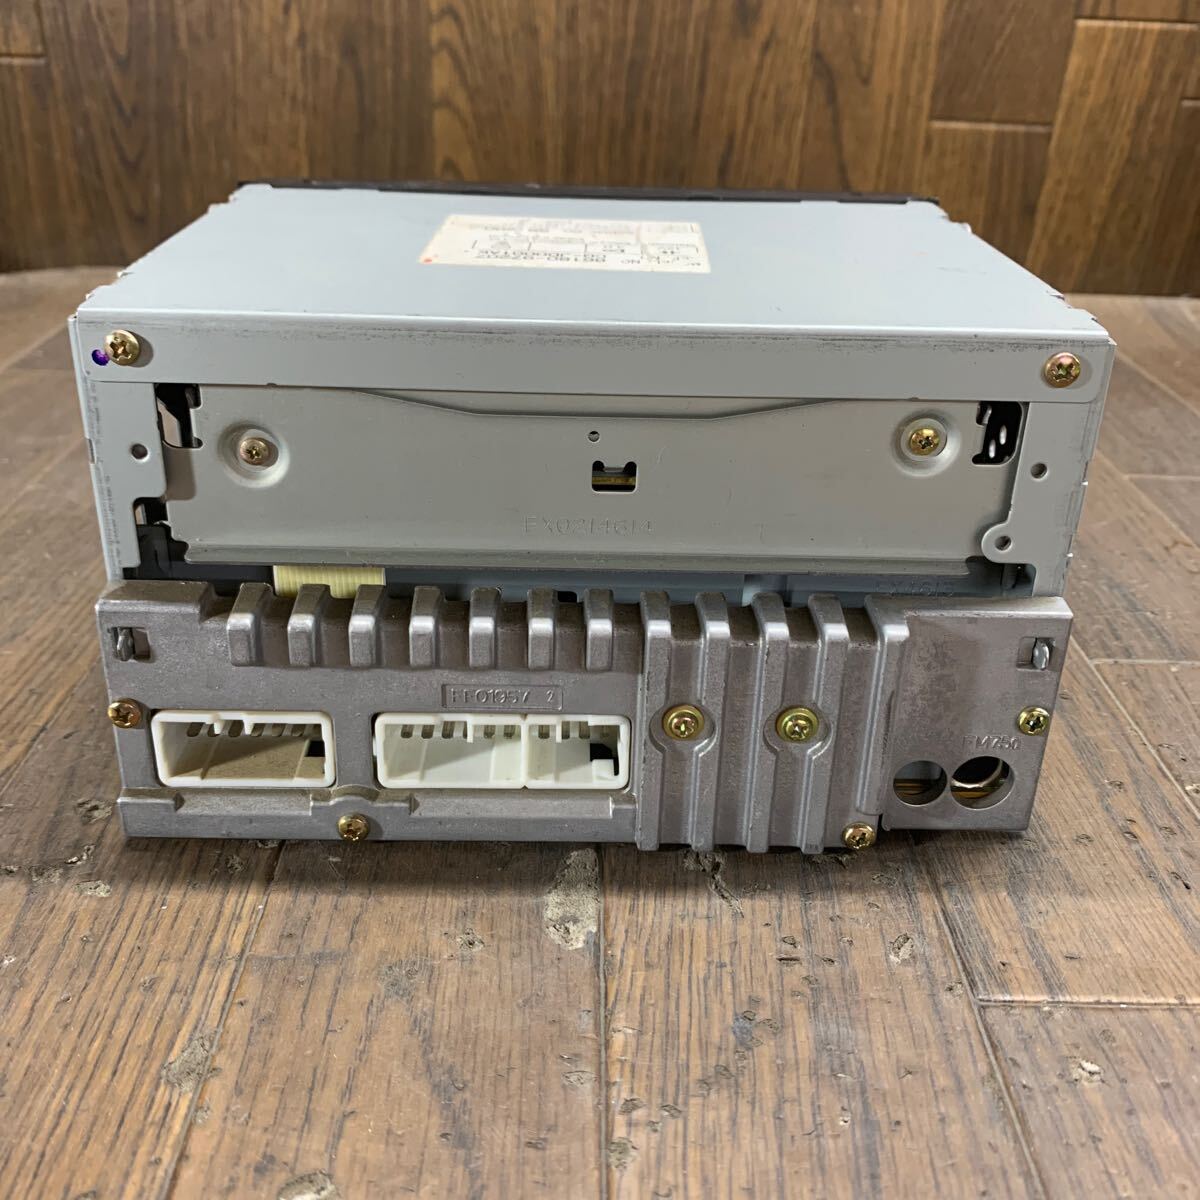 AV5-62 супер-скидка машина стерео TOYOTA 86180-97207 CQ-JD0001AK CD кассета FM/AM плеер панель корпус только простой рабочее состояние подтверждено б/у текущее состояние товар 